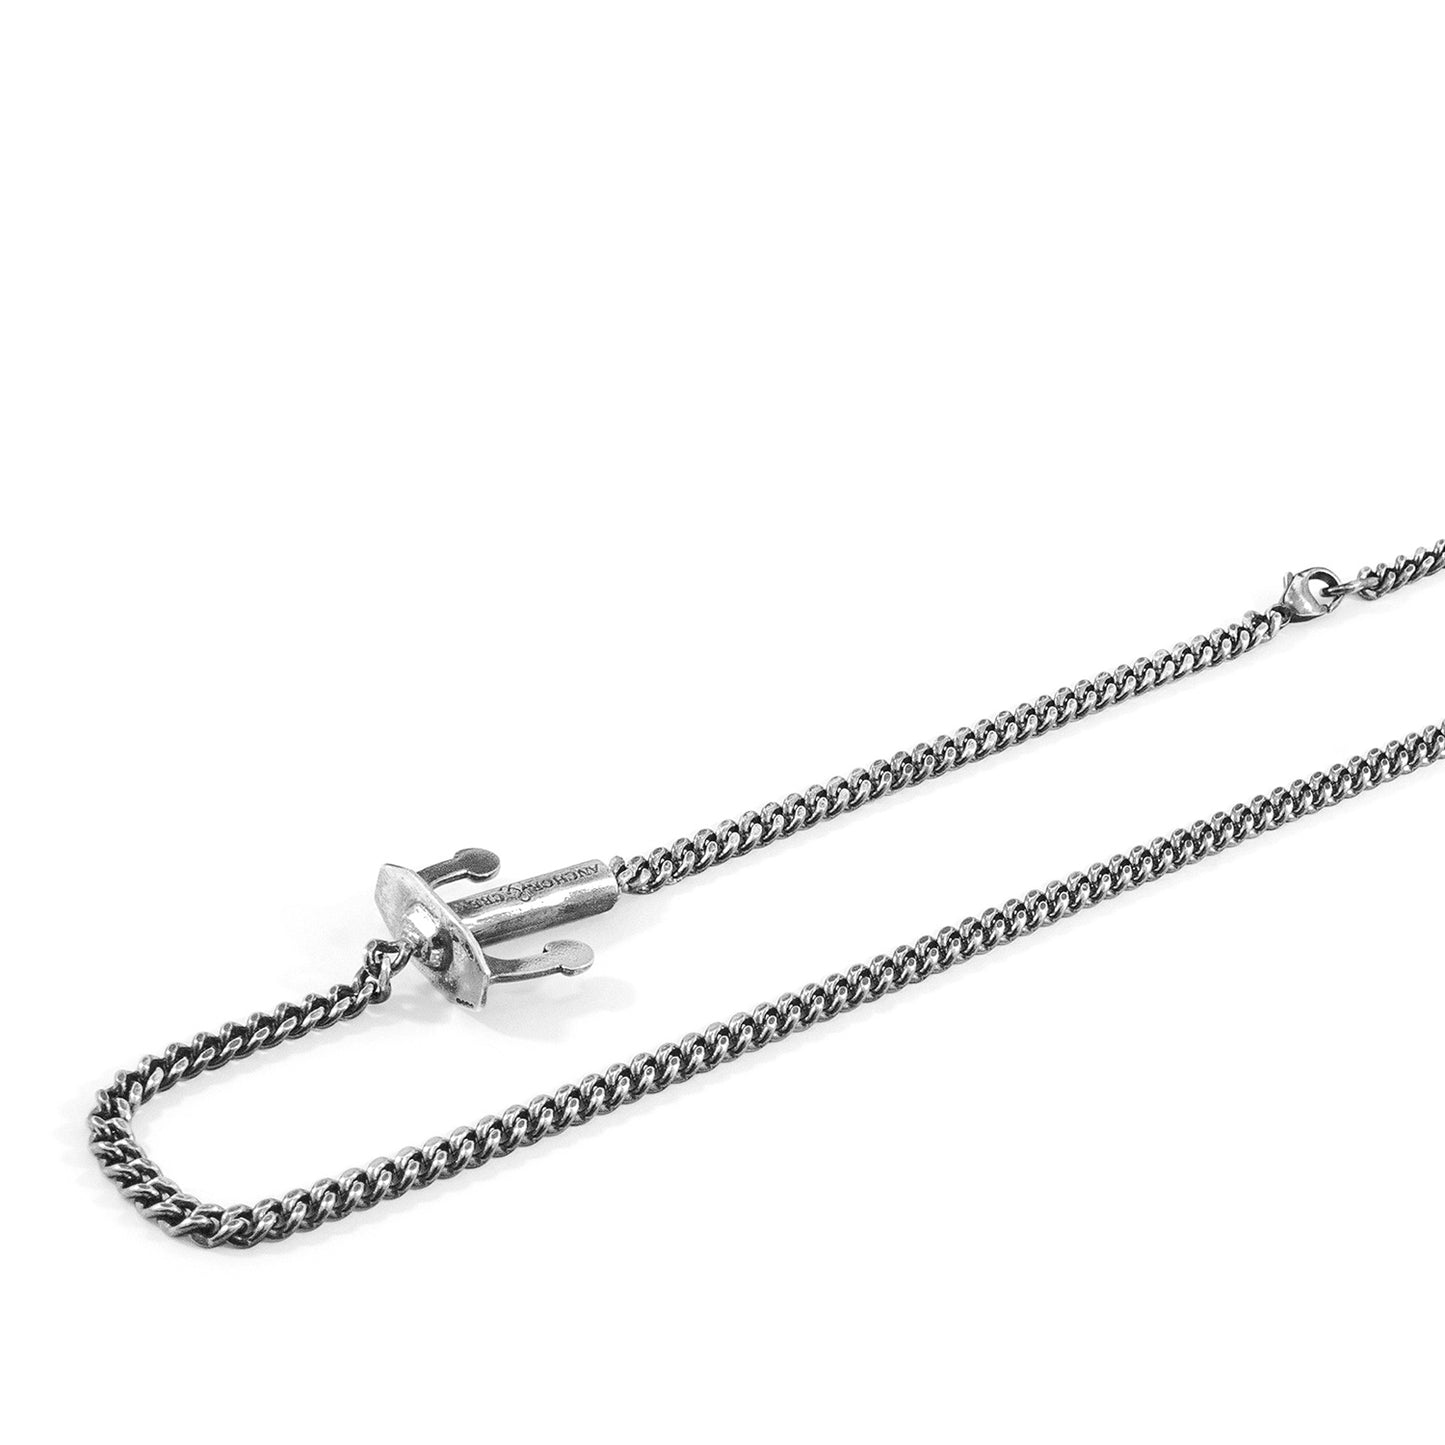 Union Anchor Double Silver Chain Bracelet